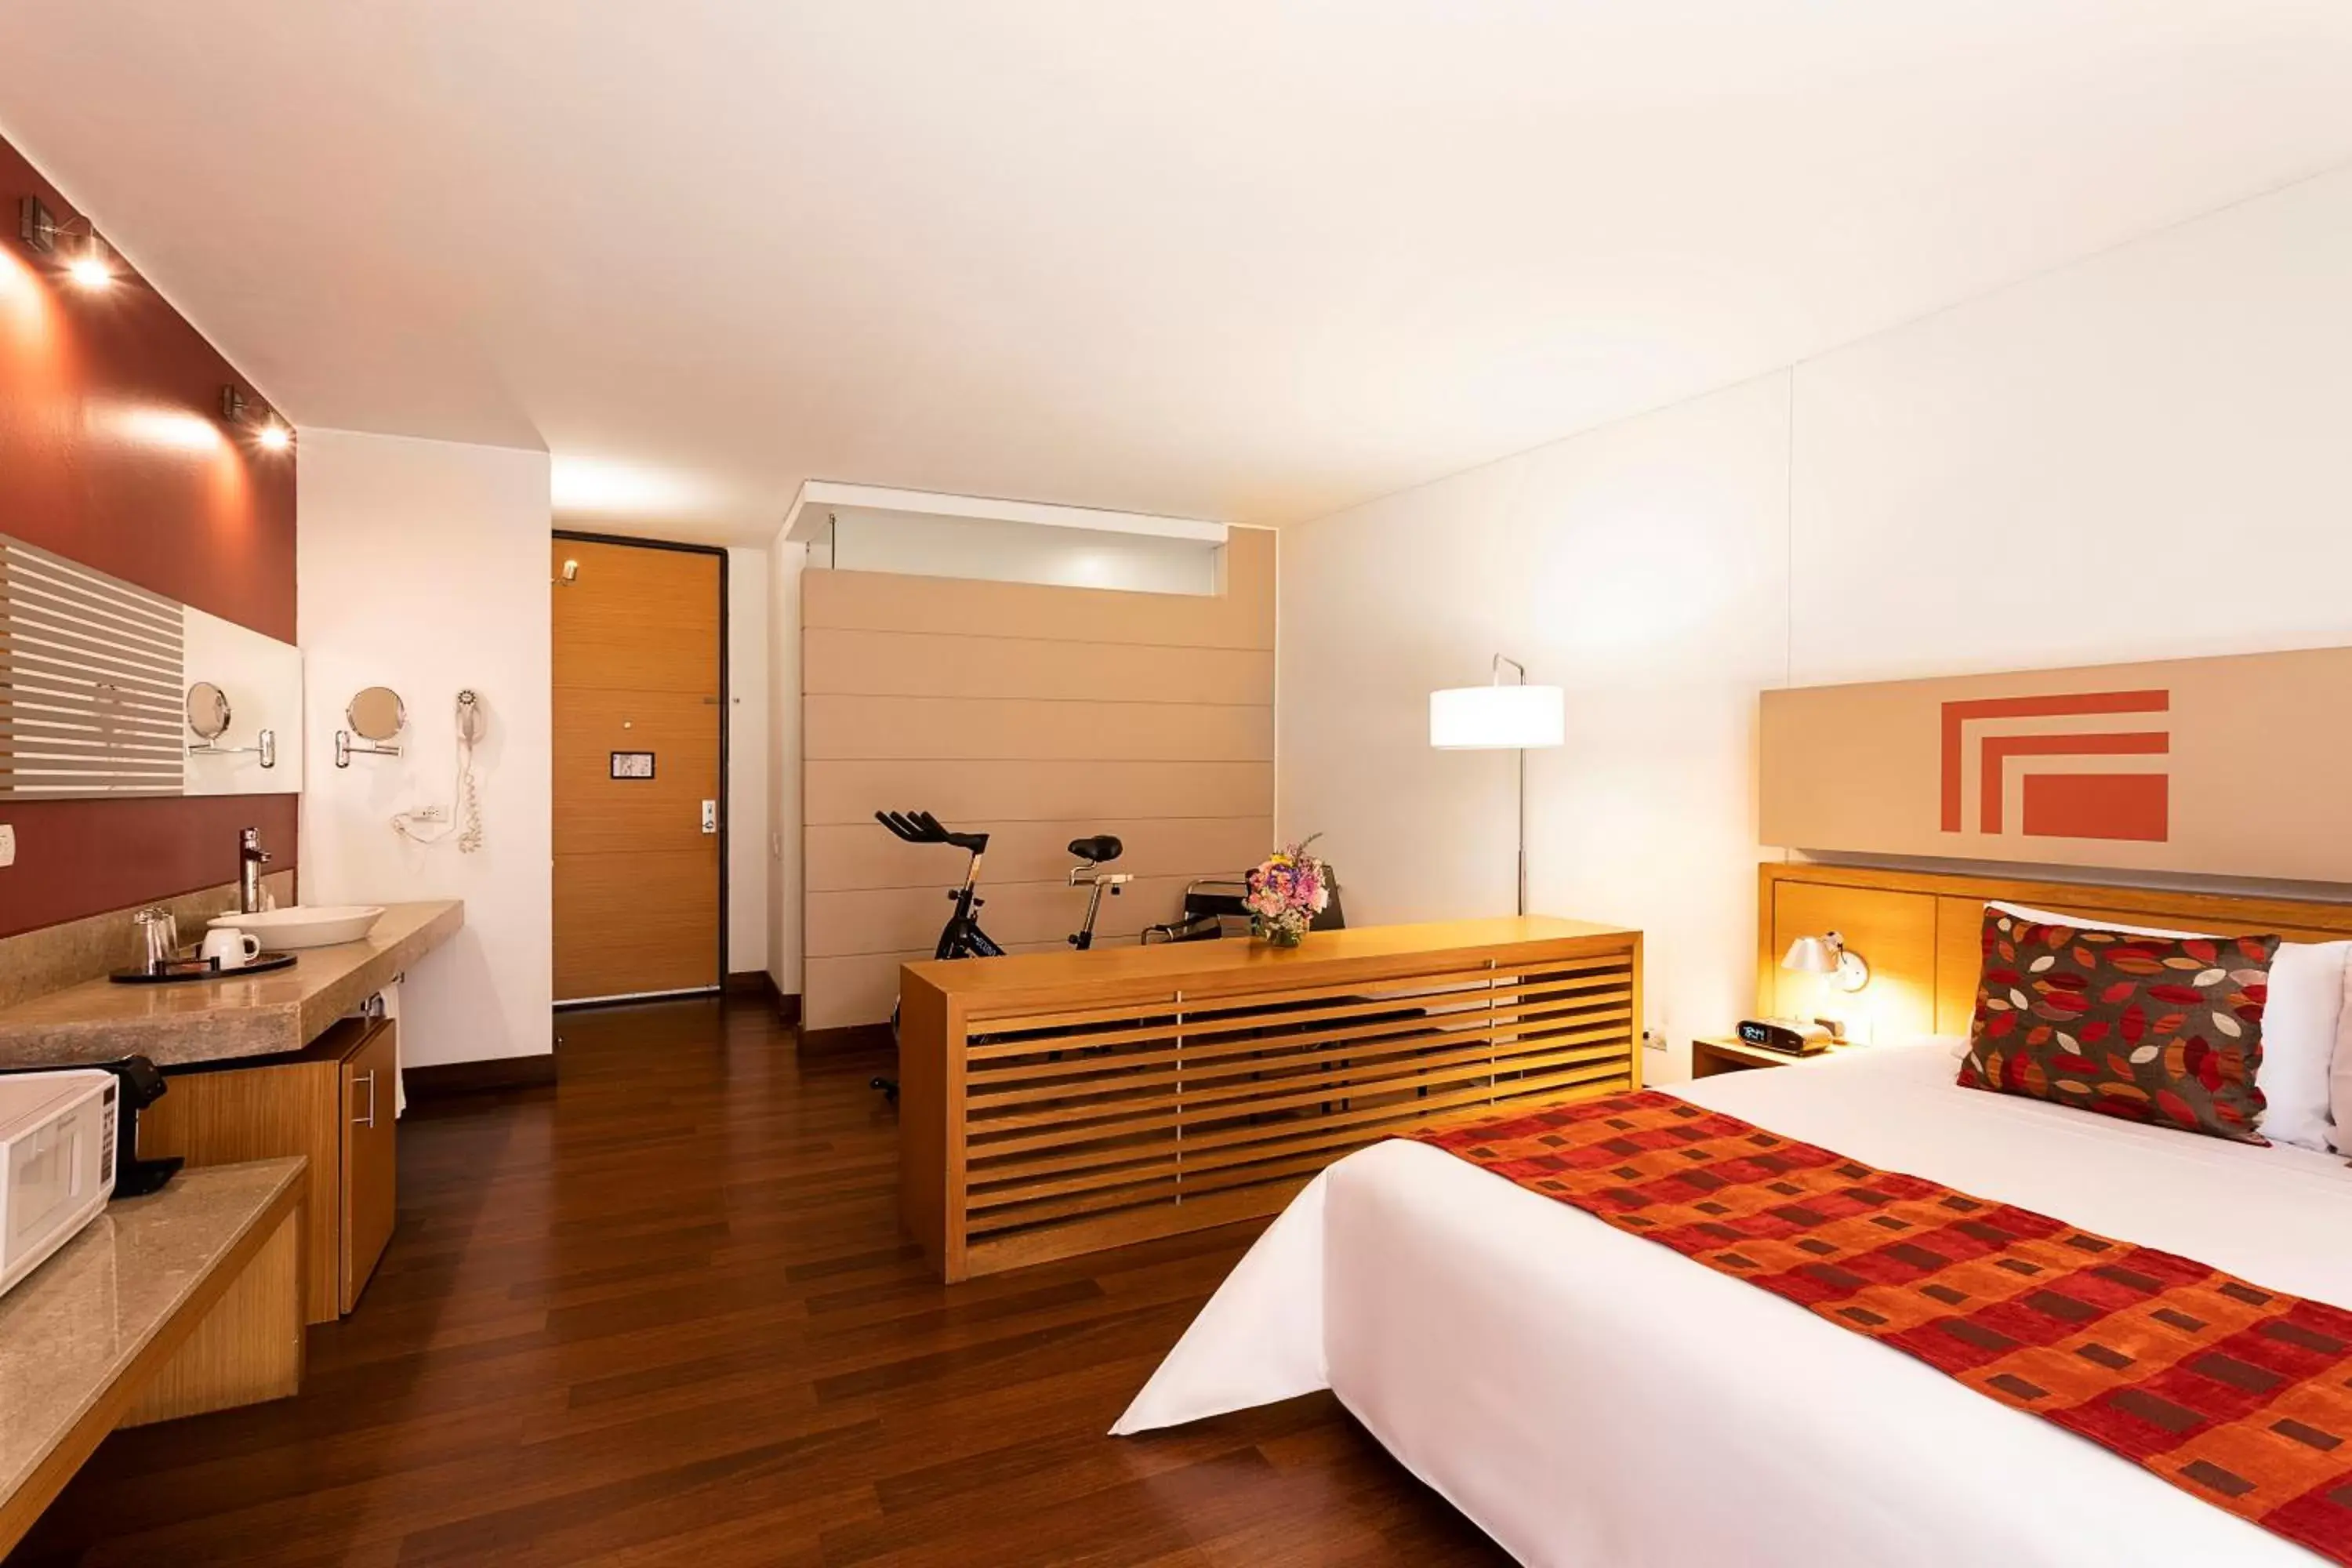 Bedroom, Room Photo in Hotel bh La Quinta